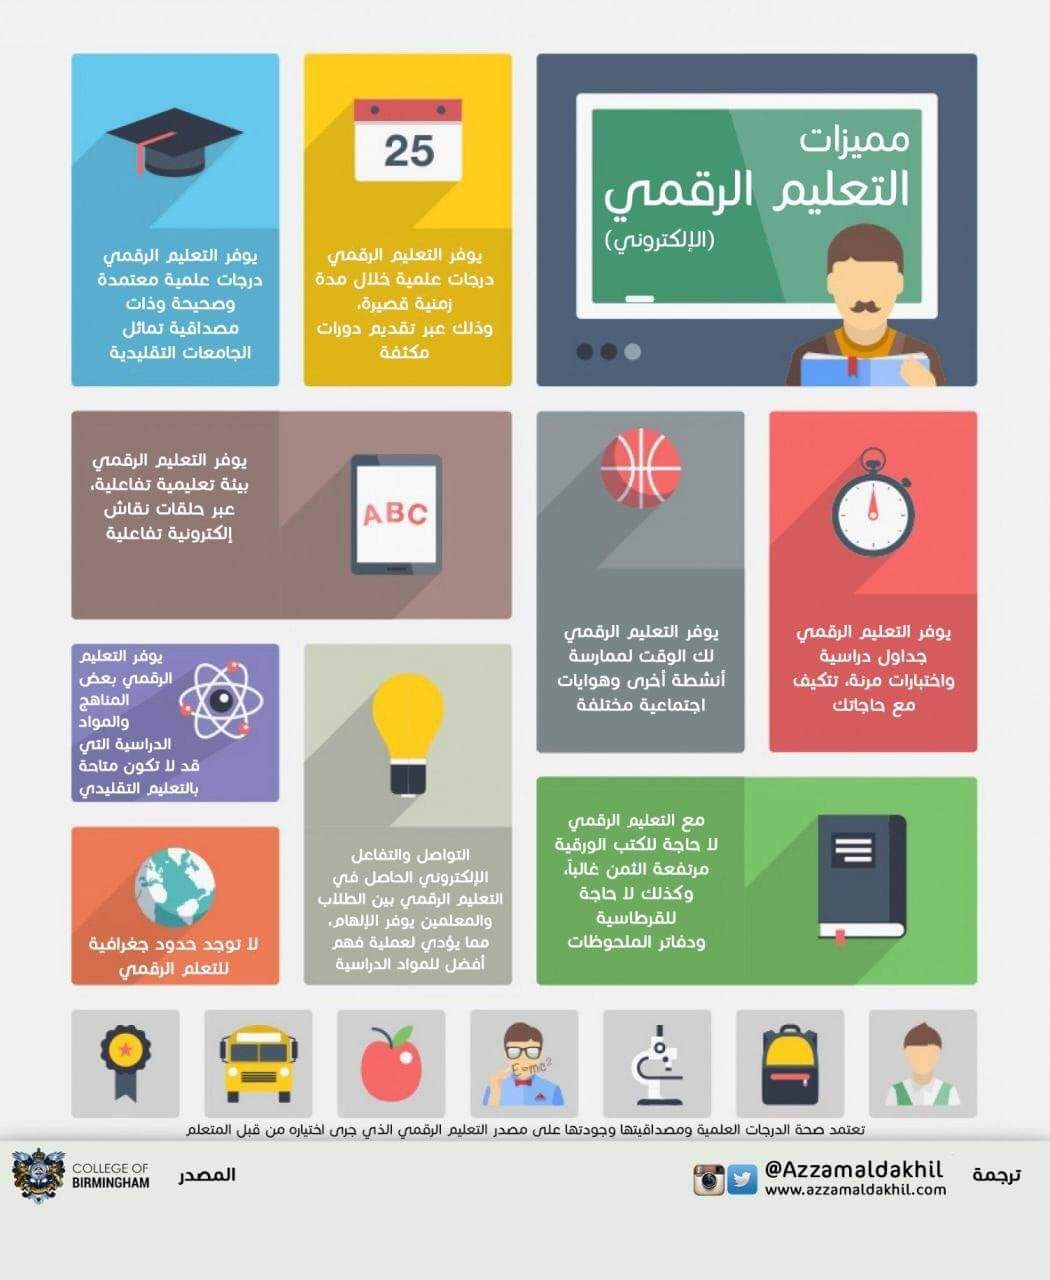 تطوير التعليم الجديد 2.0 في مصر - اخبار التعليم